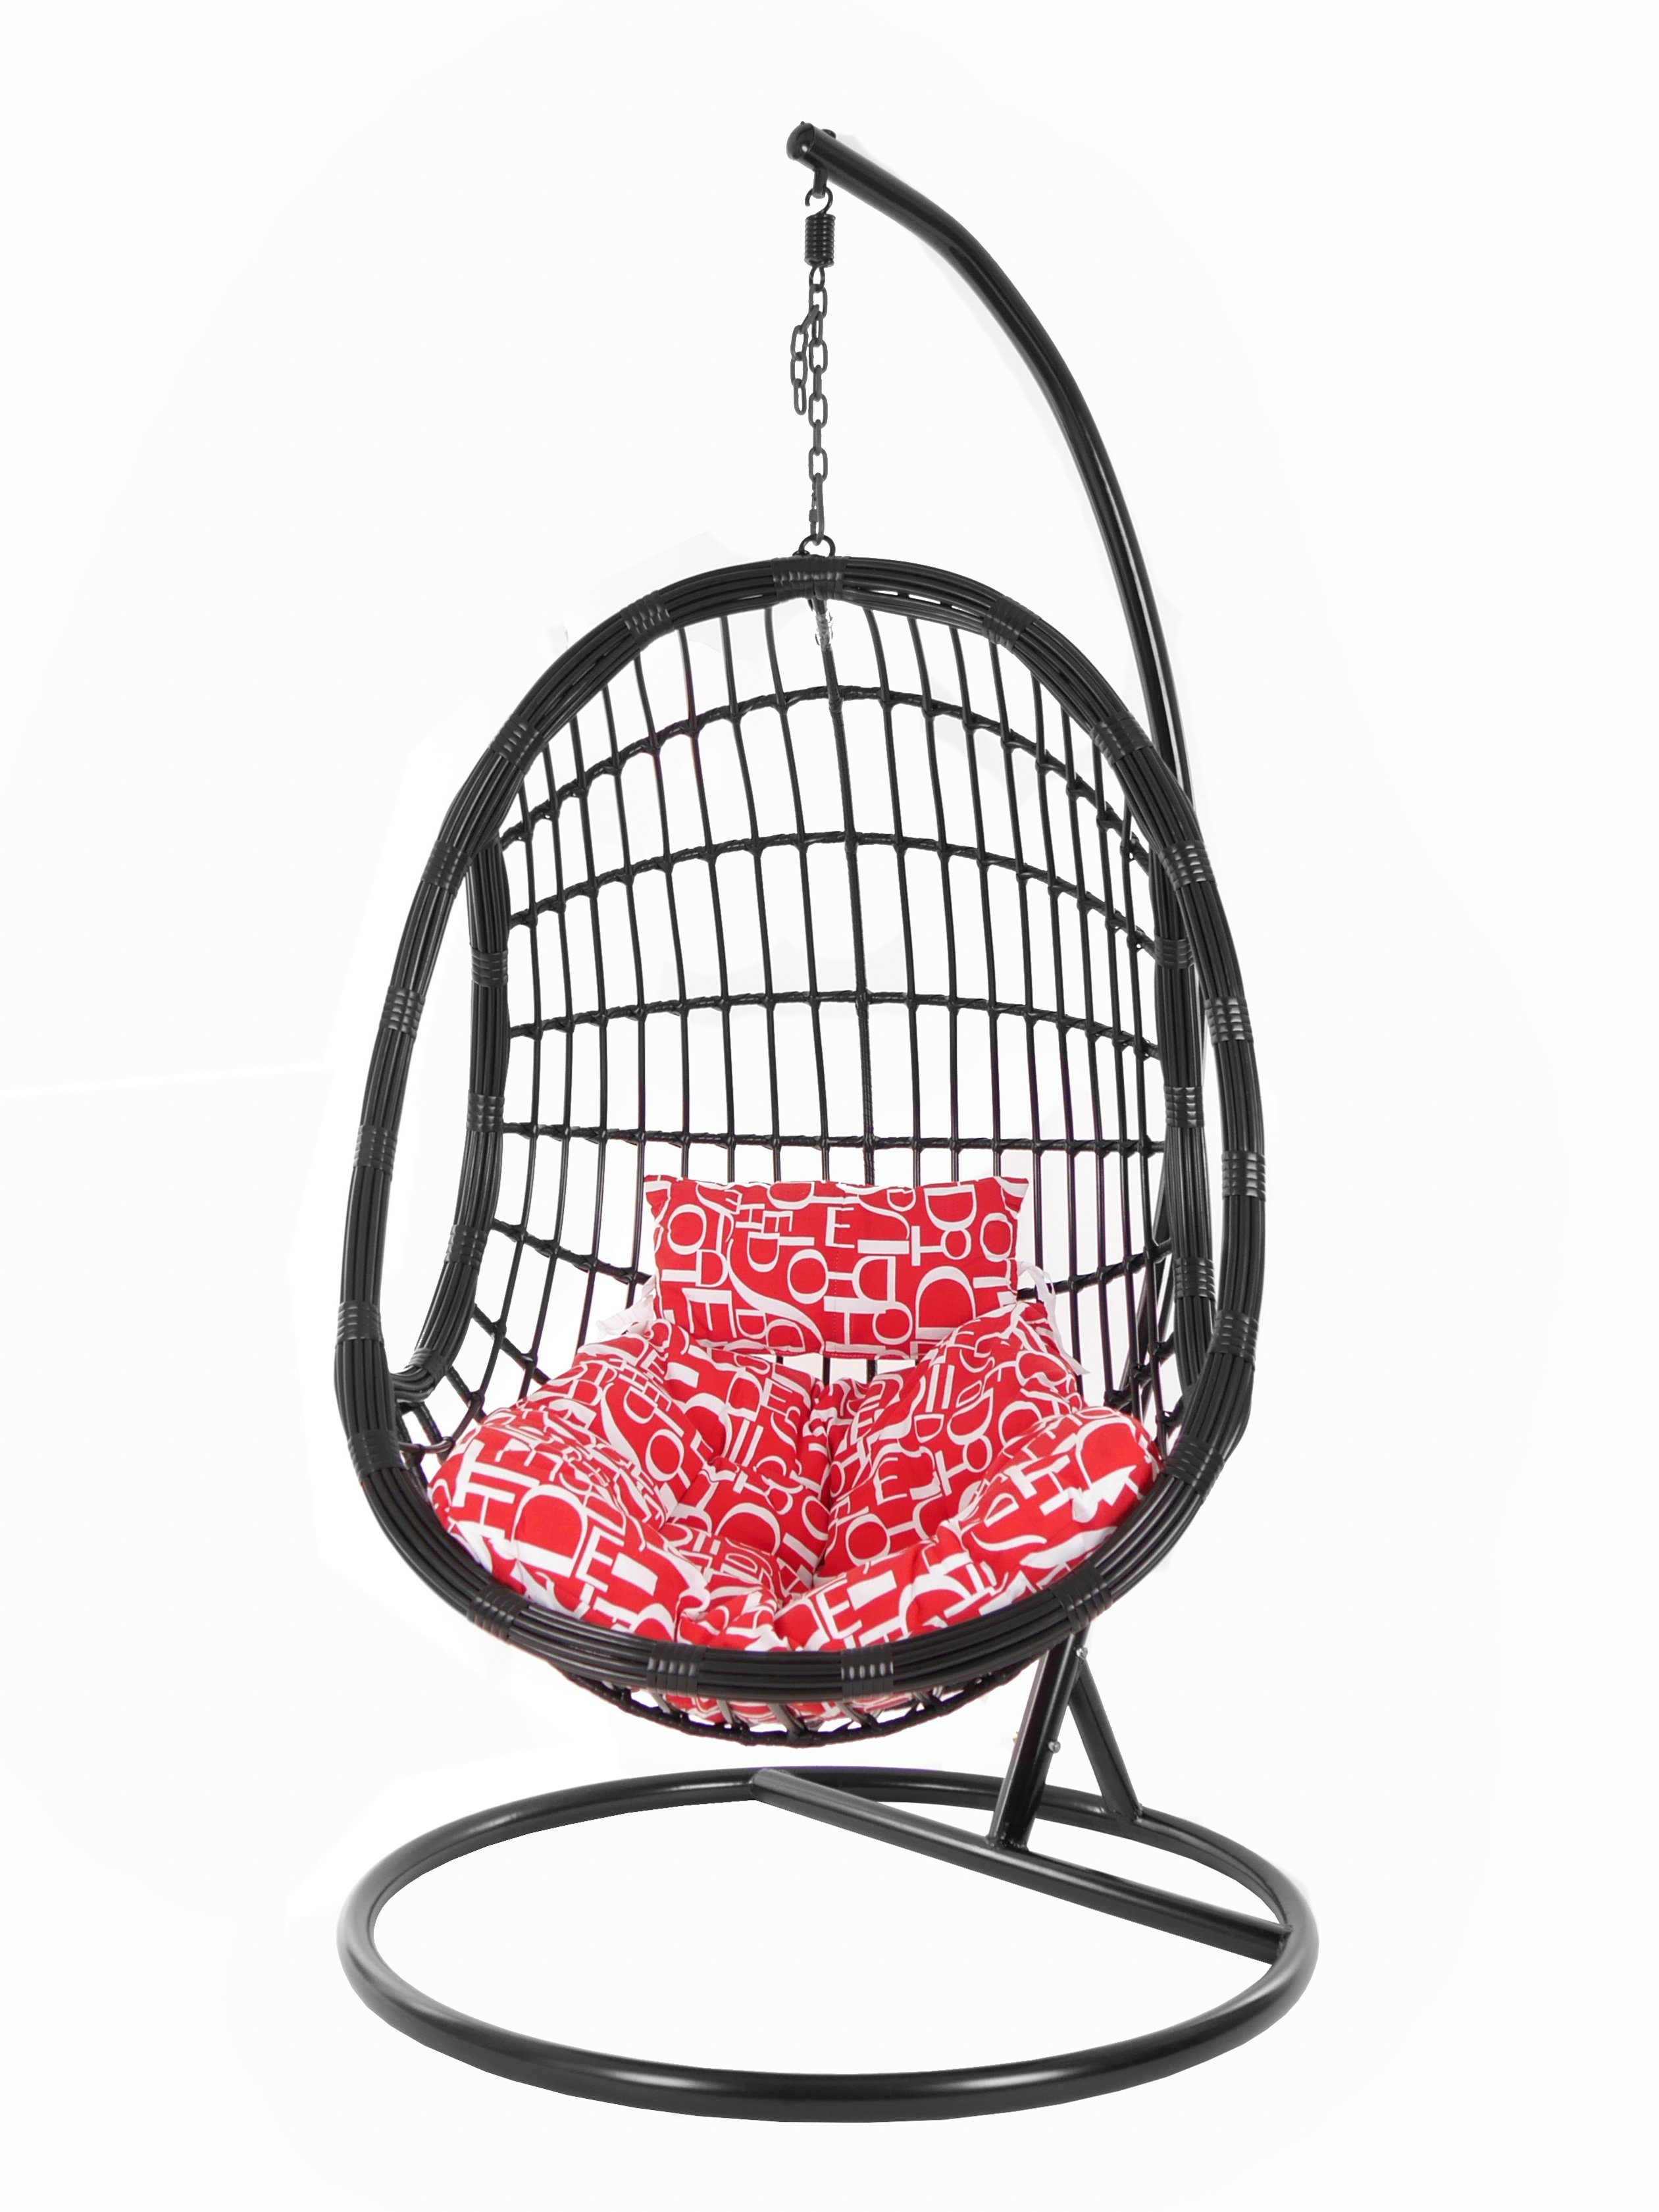 (3100 PALMANOVA Design und Kissen, mit red edles Loungemöbel, Gestell Chair, KIDEO Hängesessel schwarz, buchstabenmuster Swing letter) Schwebesessel, black, Hängesessel